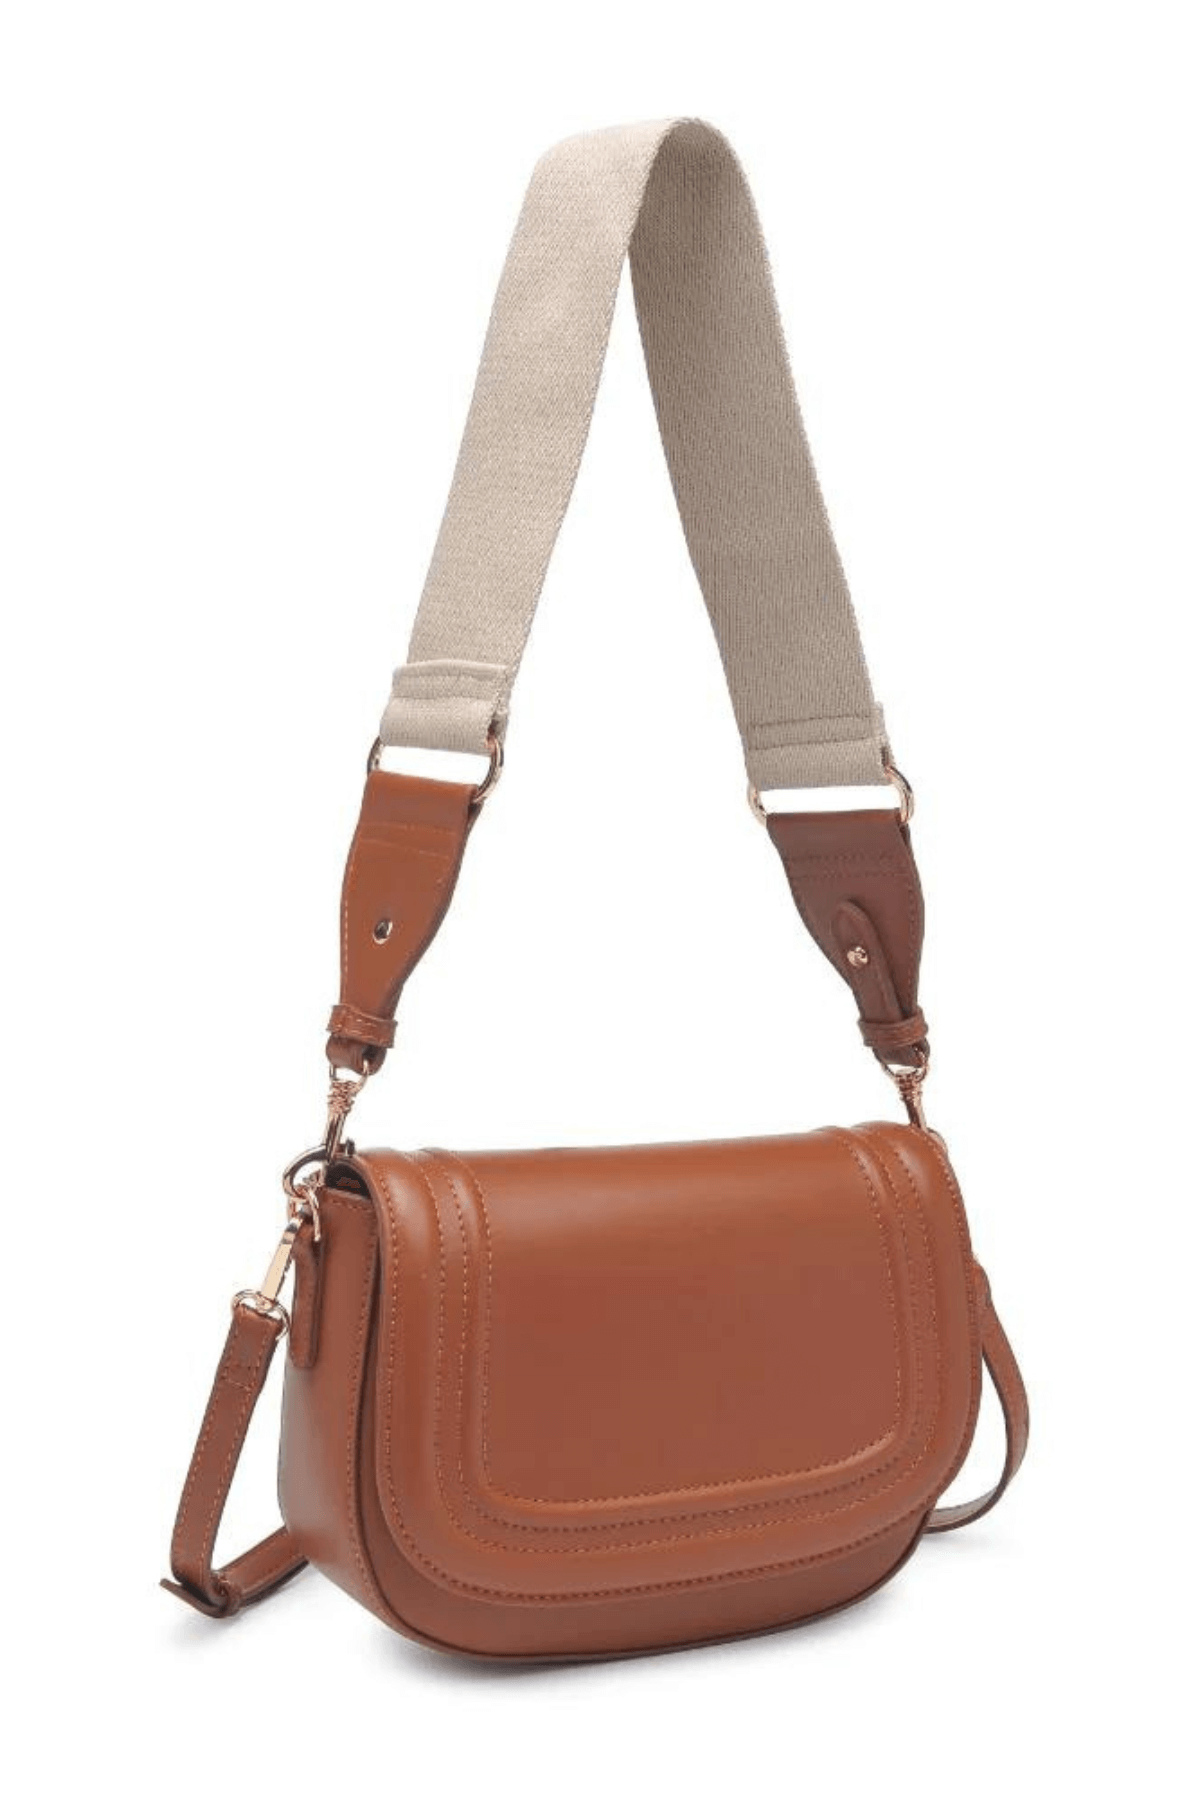 Moda Luxe Poshette Bag